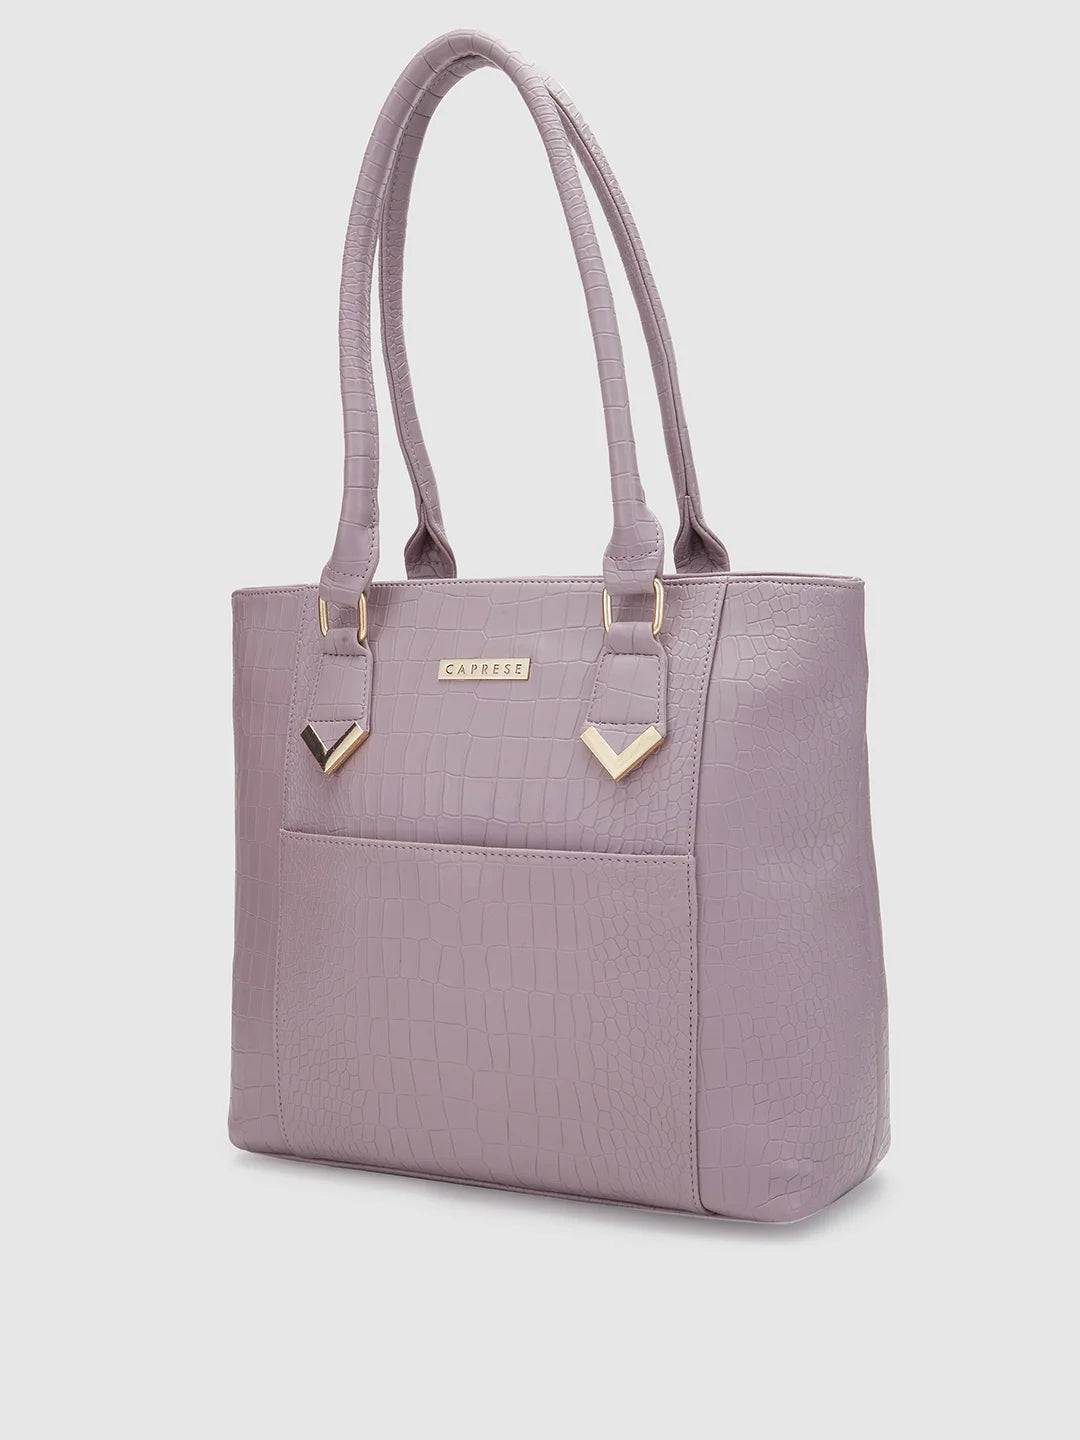 diamond lattice handle women handbag shoulder| Alibaba.com